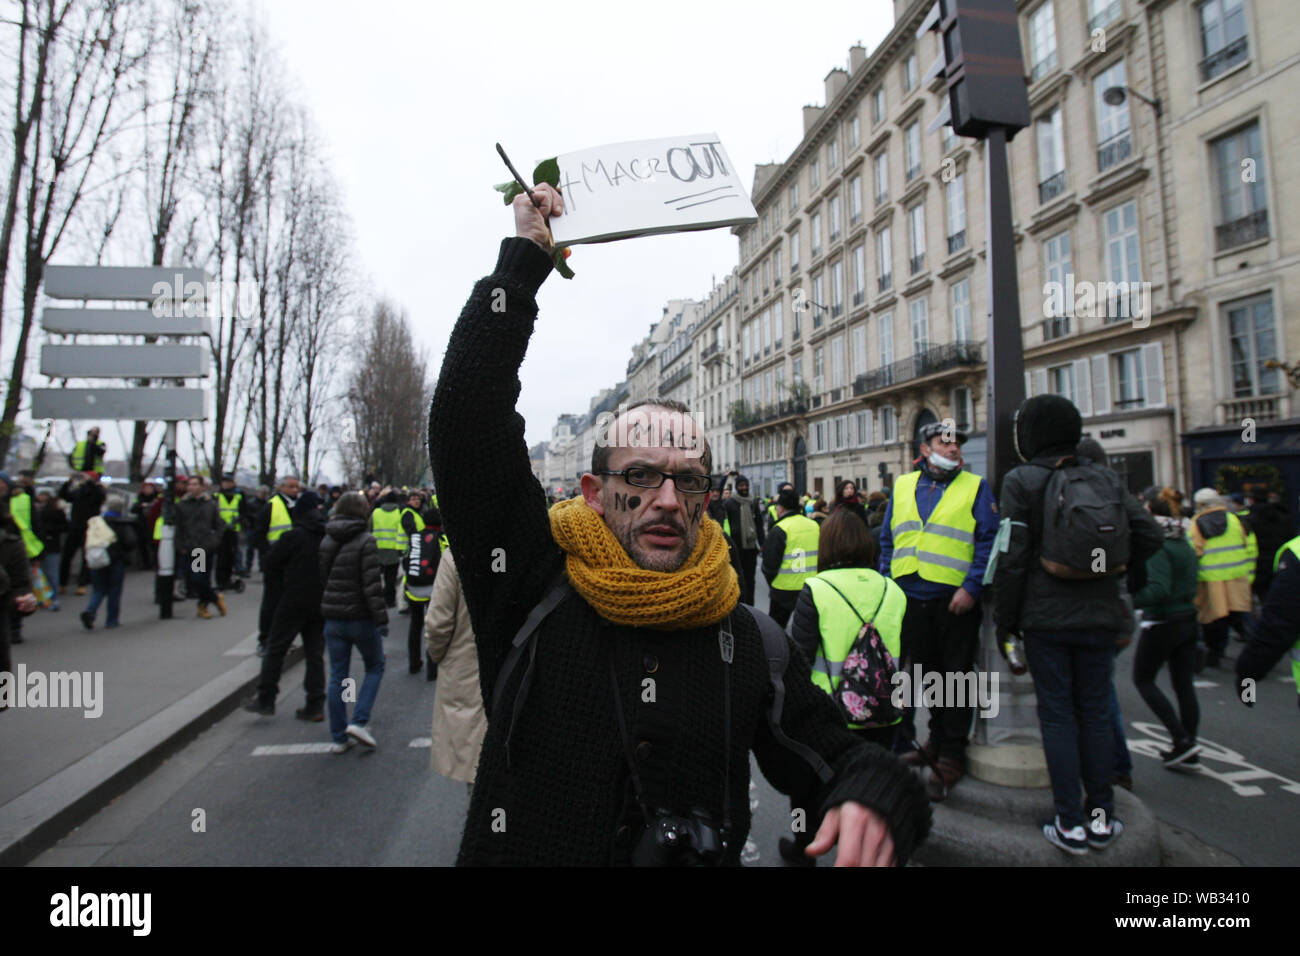 Gilet jaune portant des manifestants portent un poster "Macron" au cours du mois de mars une manifestation à Paris le 5 janvier 2019 à Paris,France. Des milliers d'demonst Banque D'Images